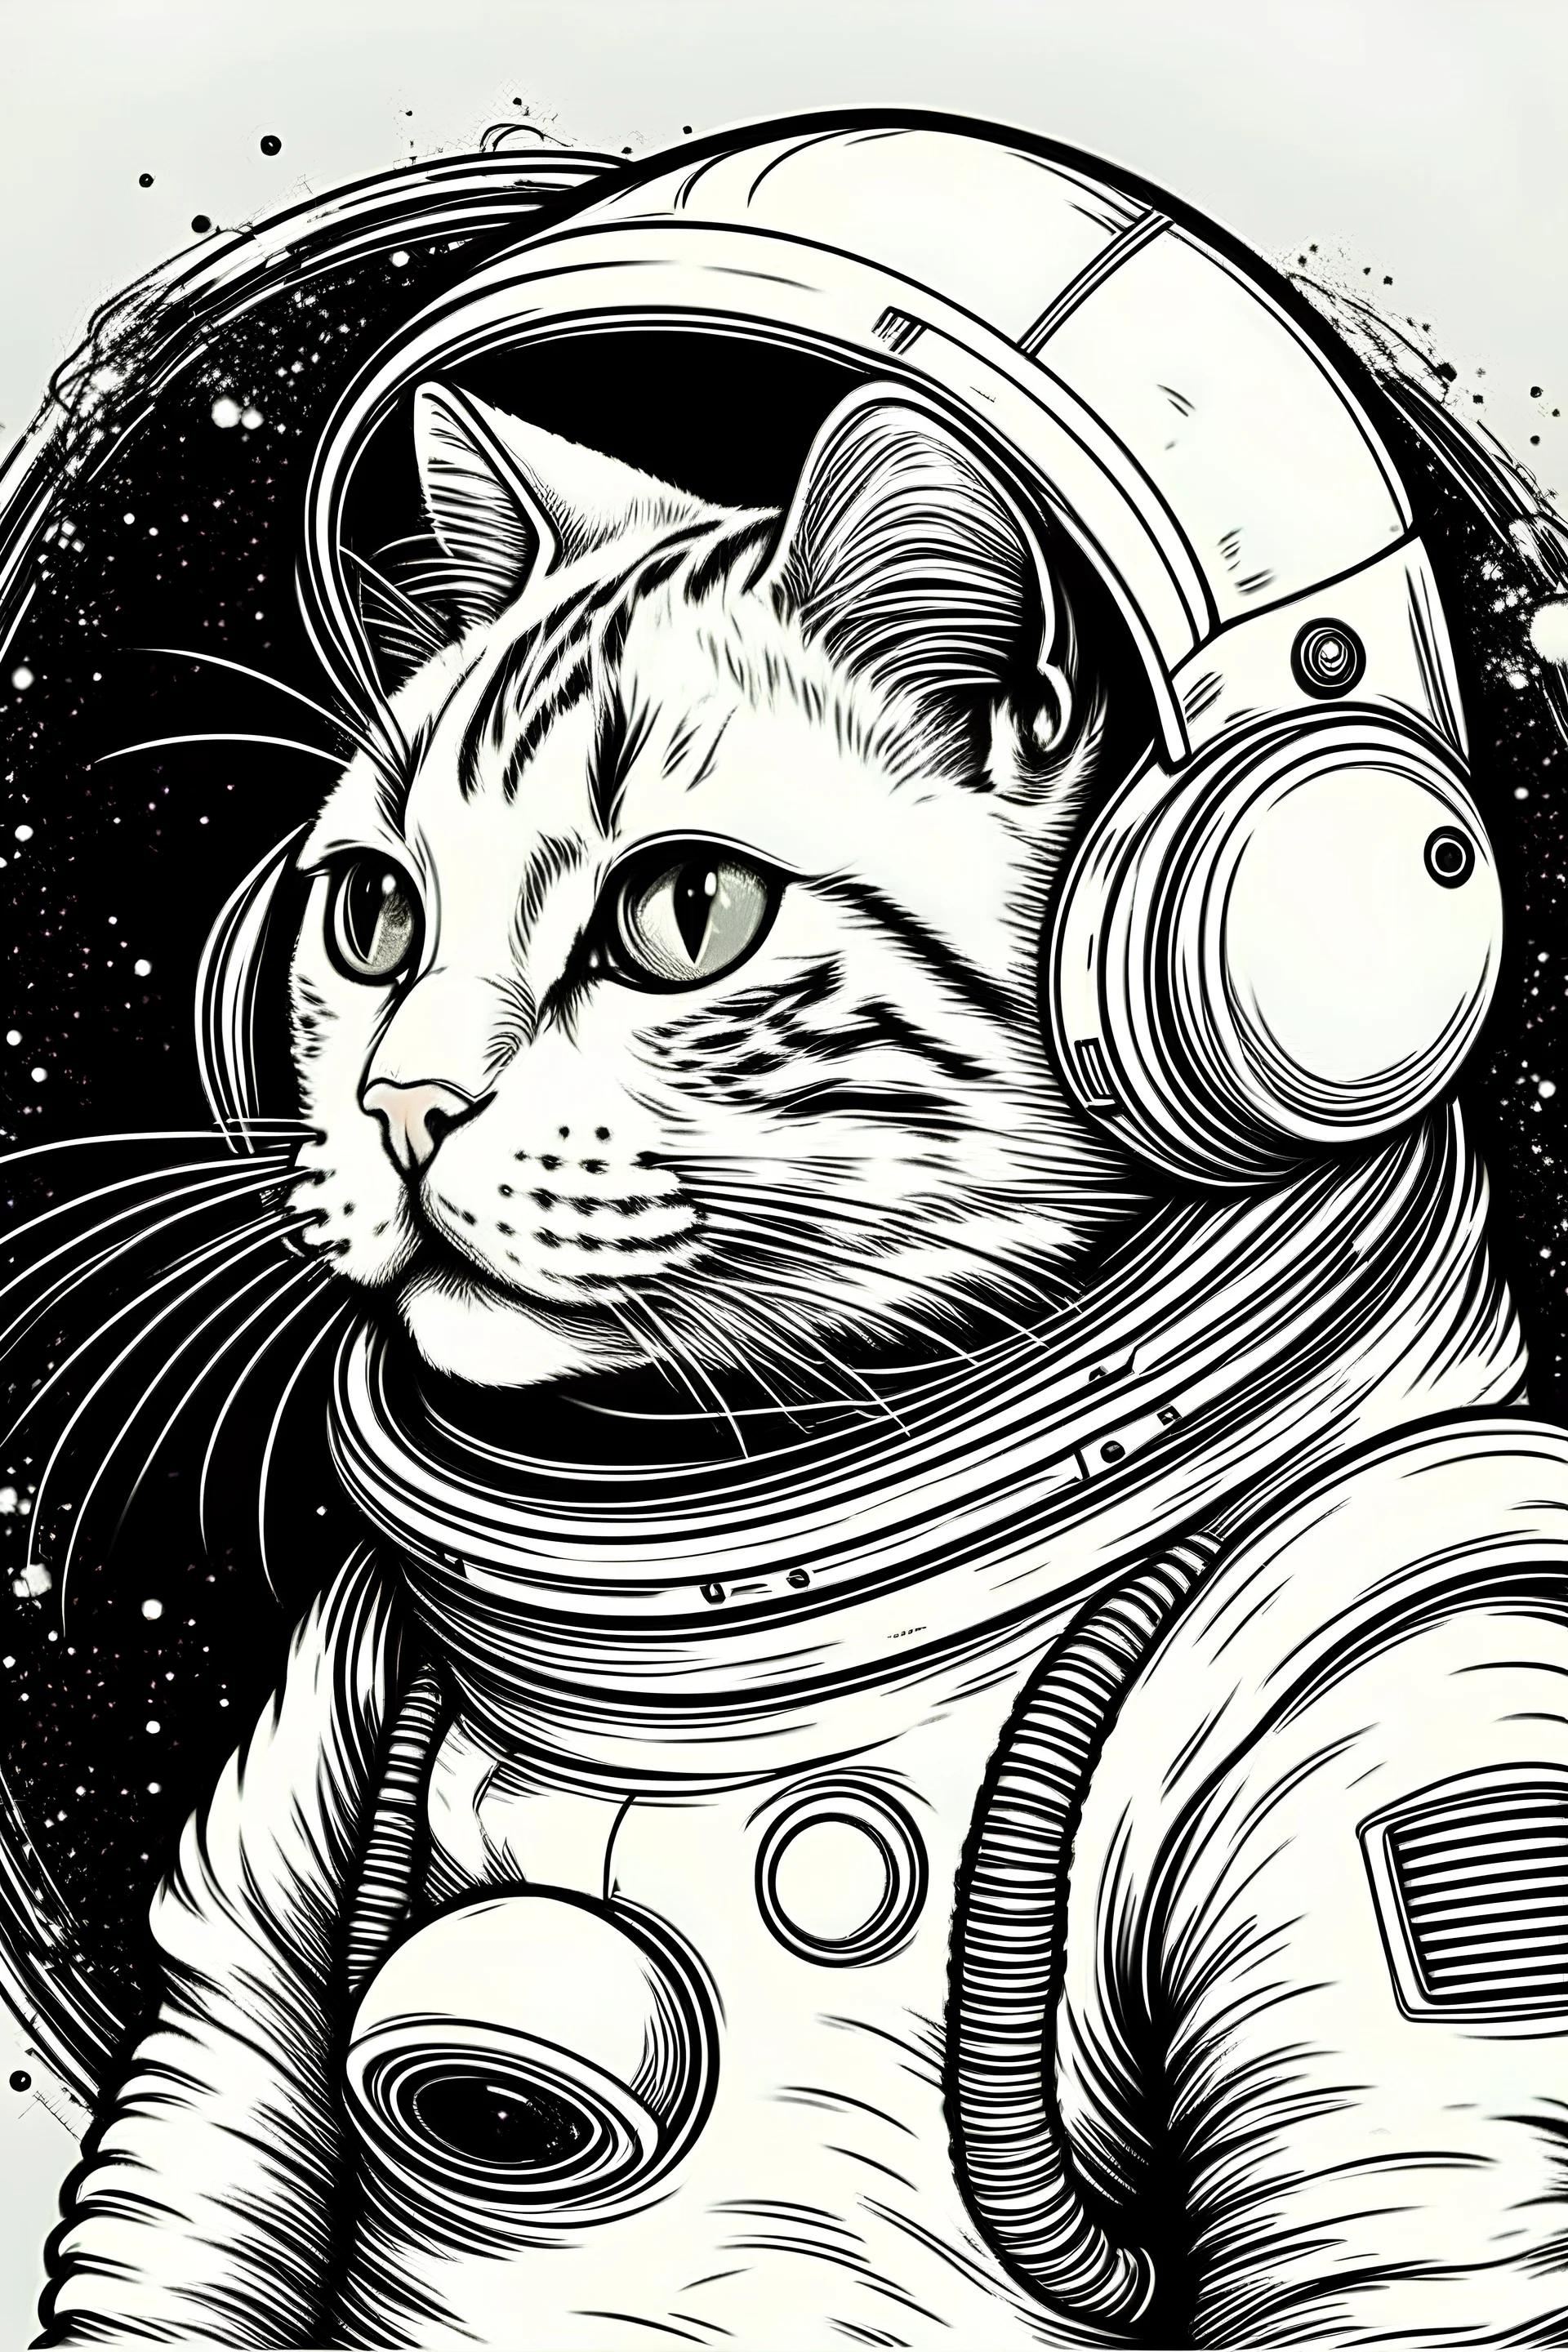 dibujo de un gato astronauta en el plneta marte a color